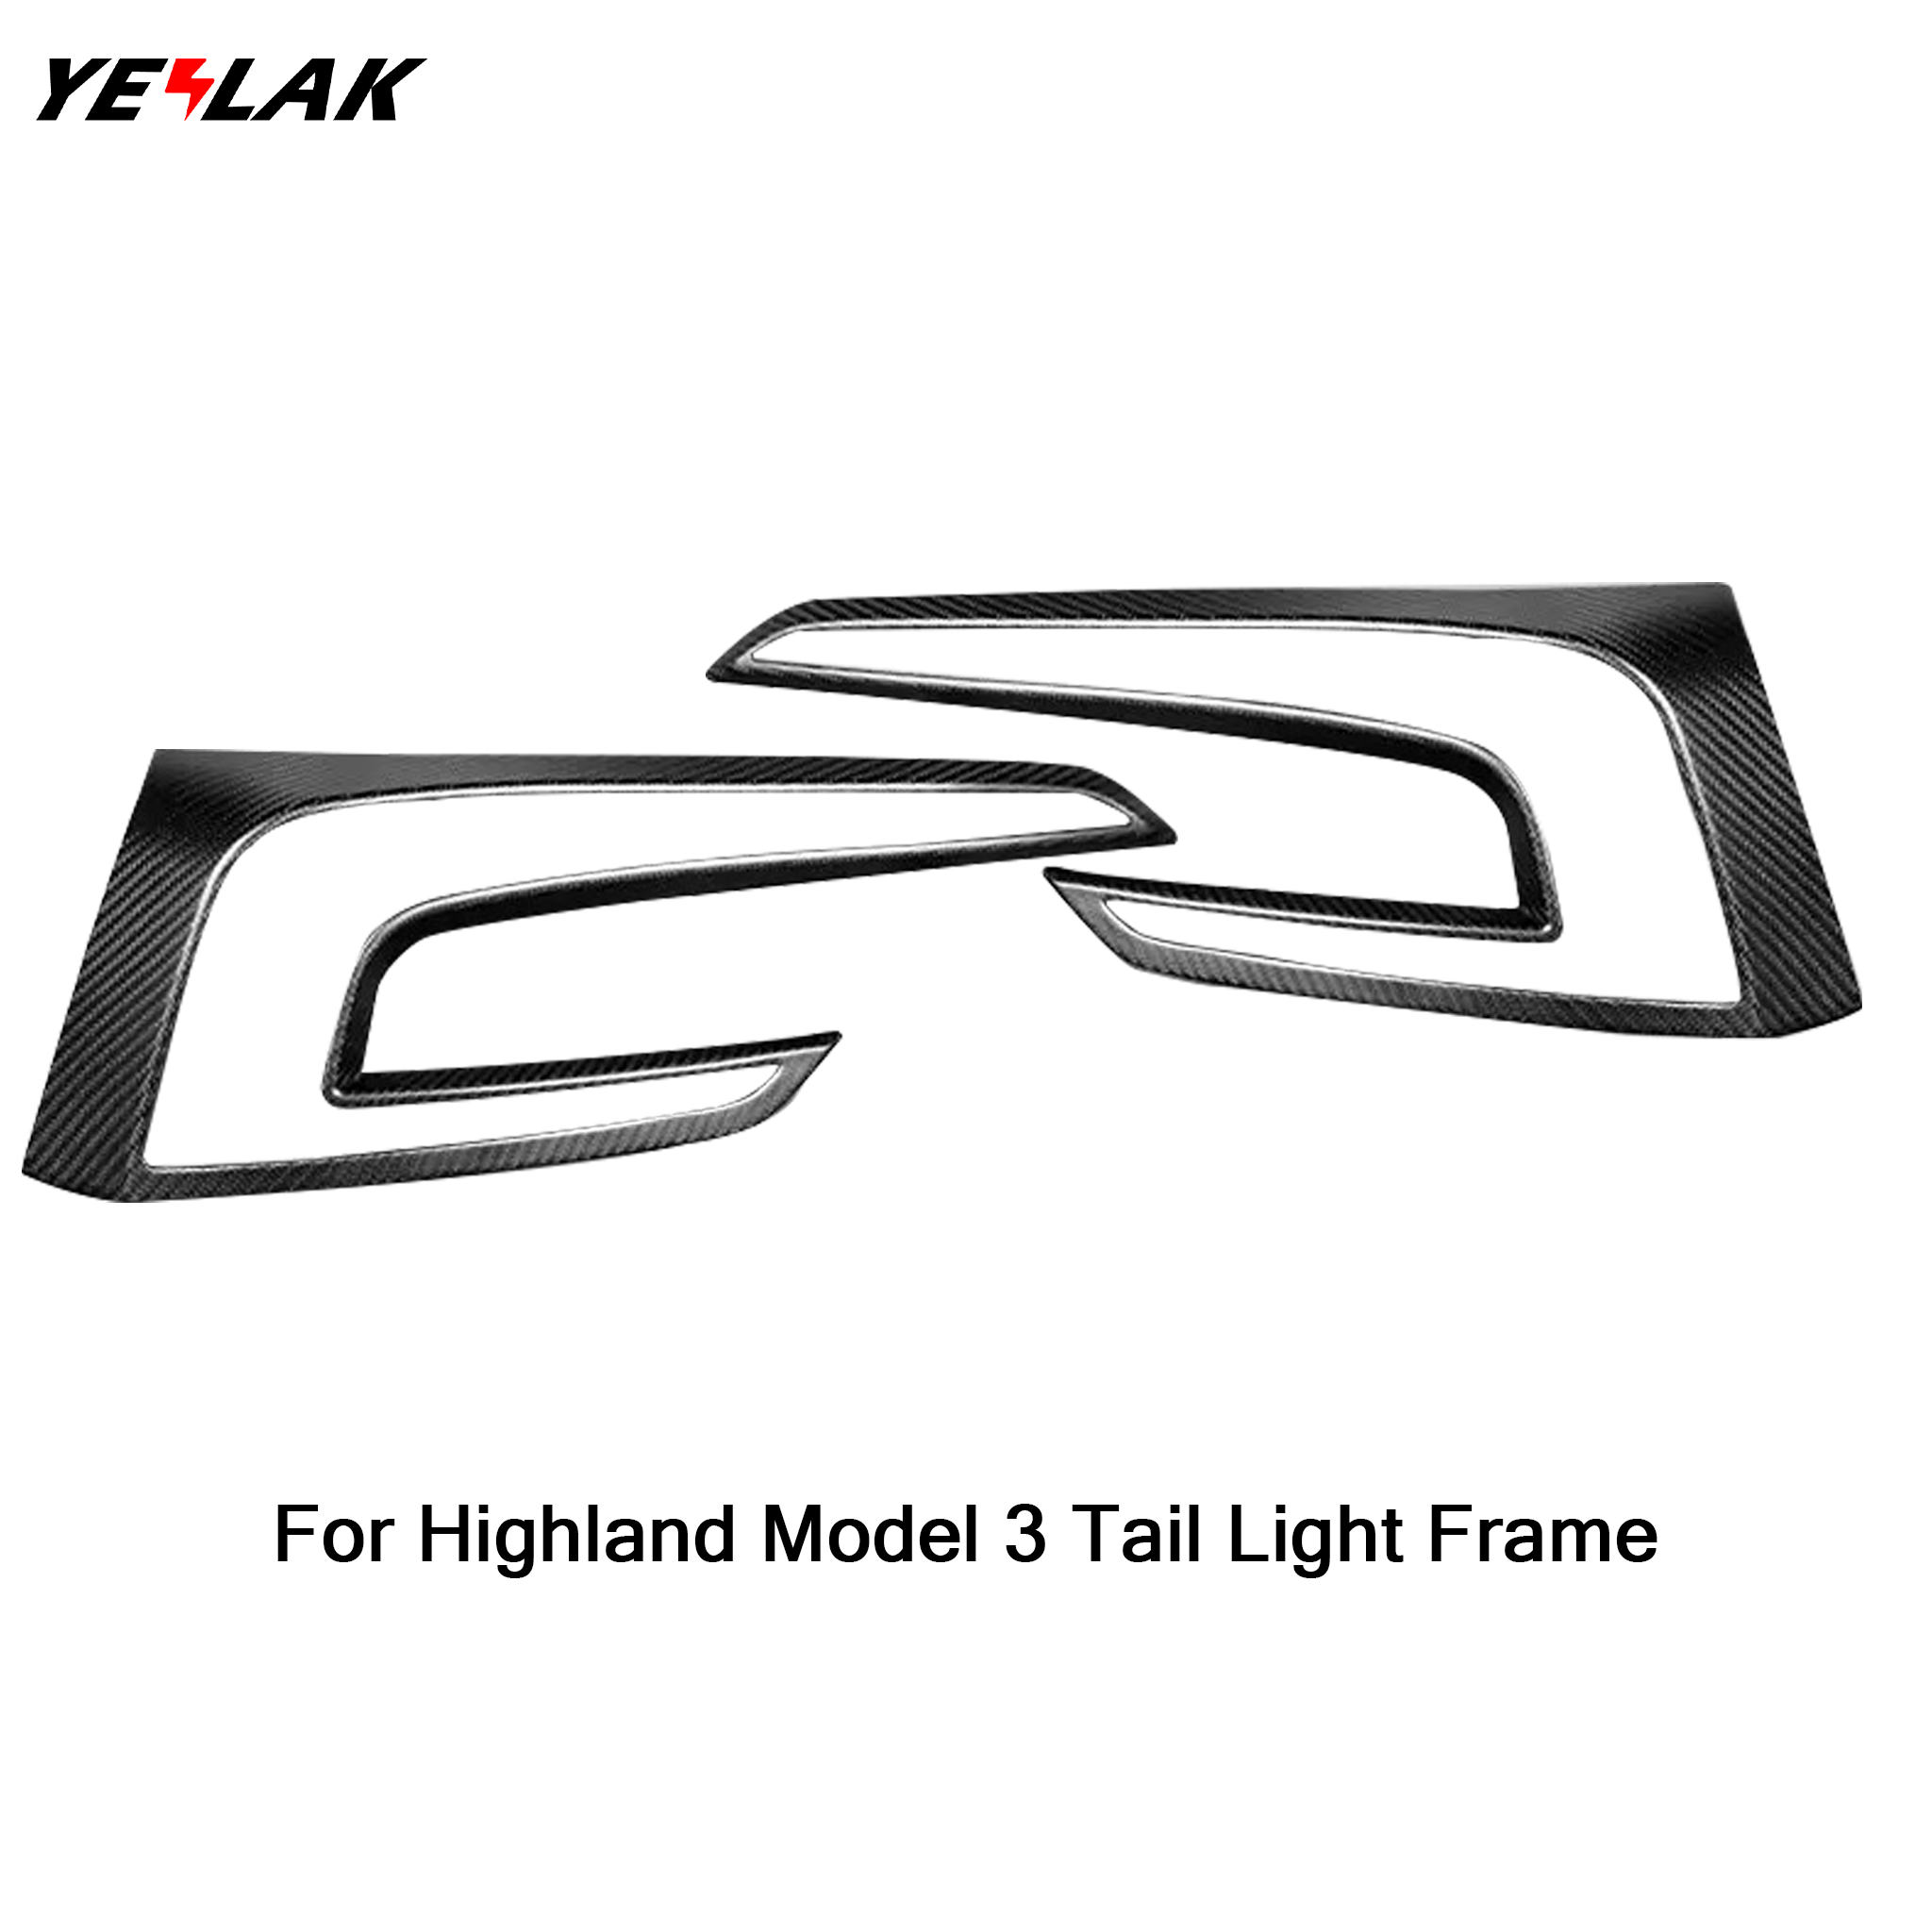 Real Carbon Fiber Tail Light Frame for Tesla Model 3 Highland (2 pcs)